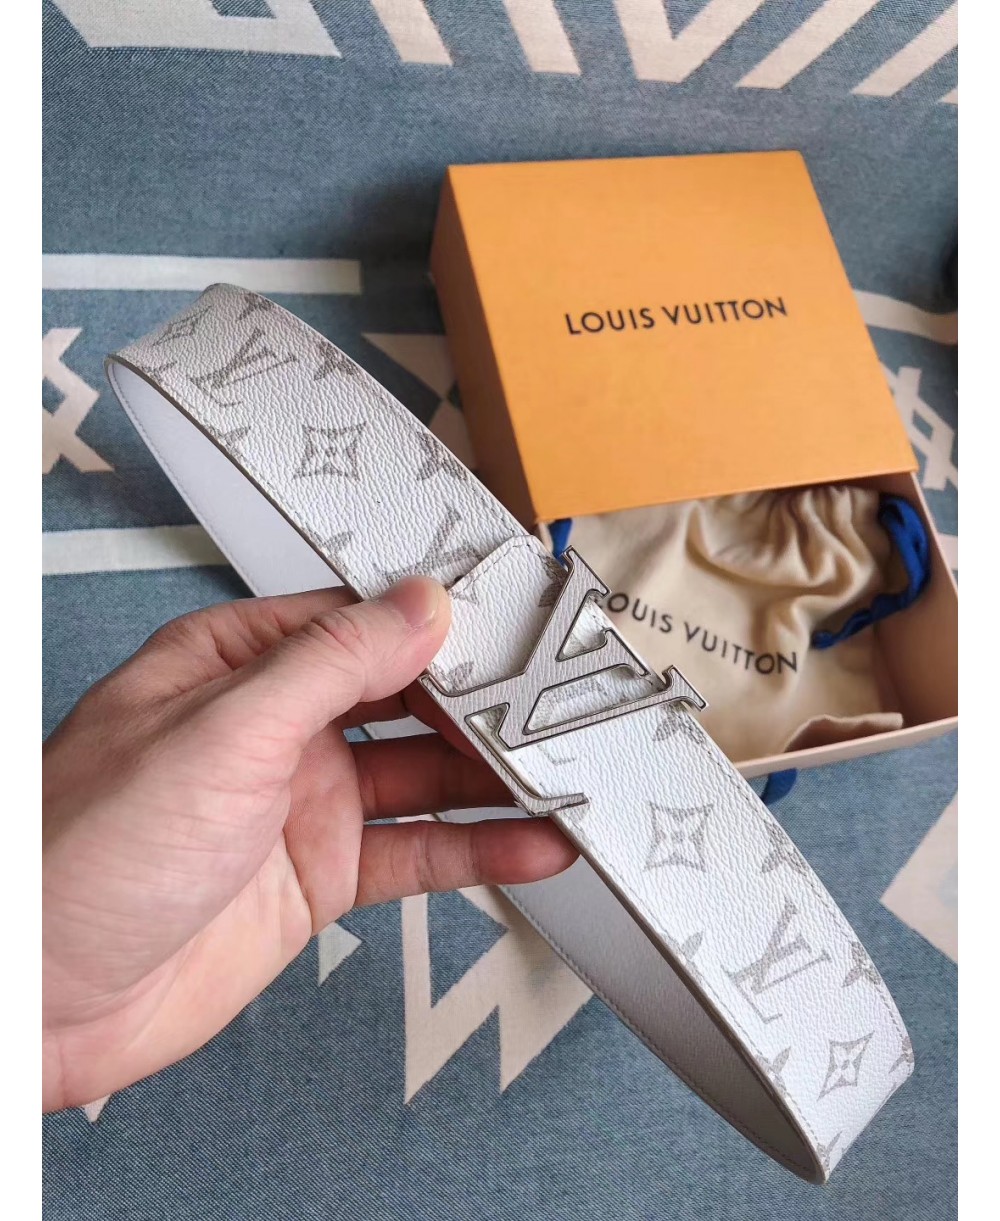  Cinture Louis Vuitton Uomo